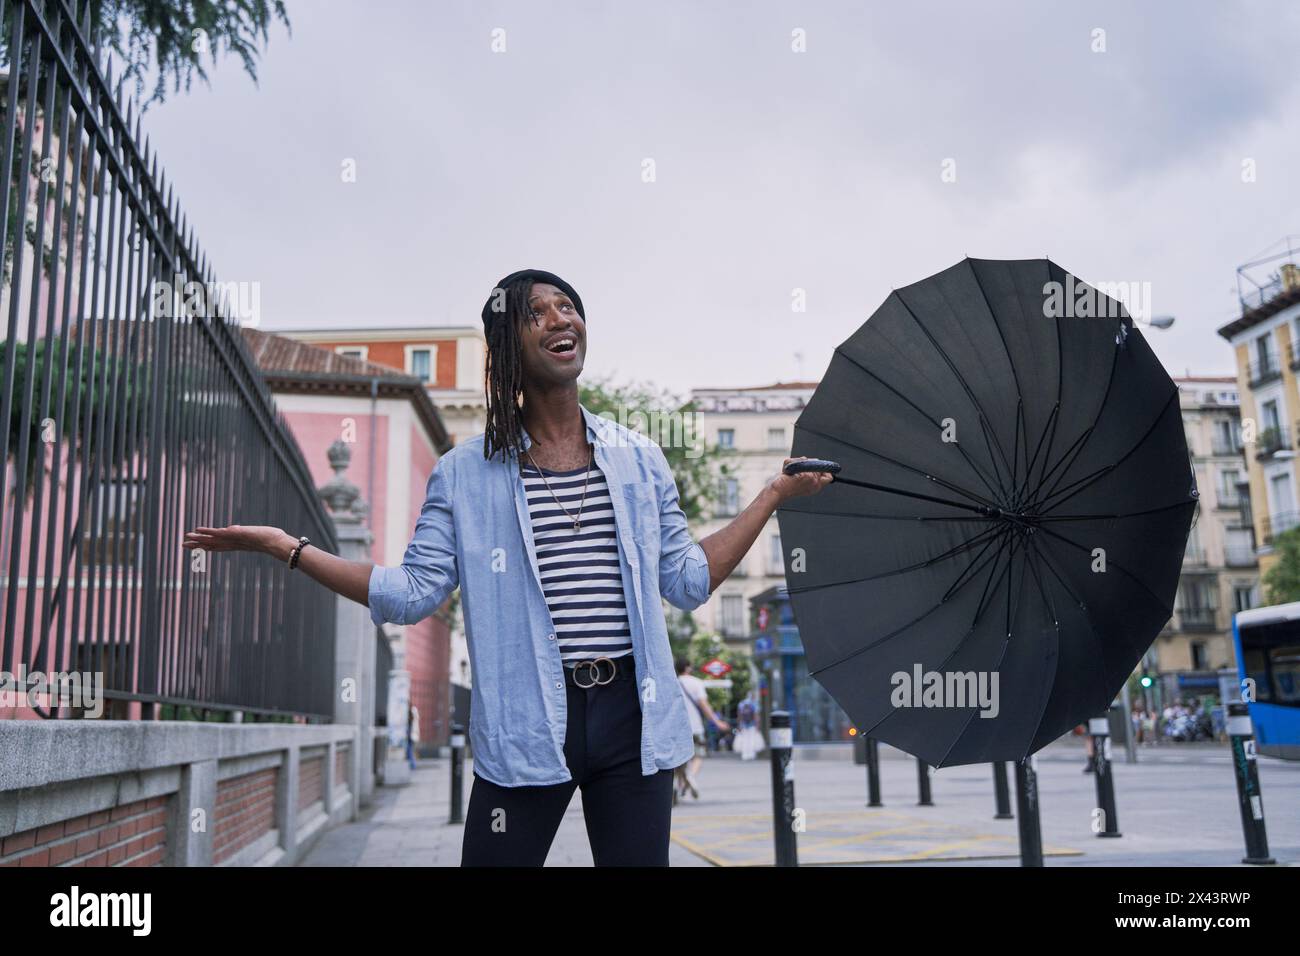 Attraktiver afrikanischer Mann mit Regenschirm, der ihn aushält, um zu sehen, ob es regnet Stockfoto